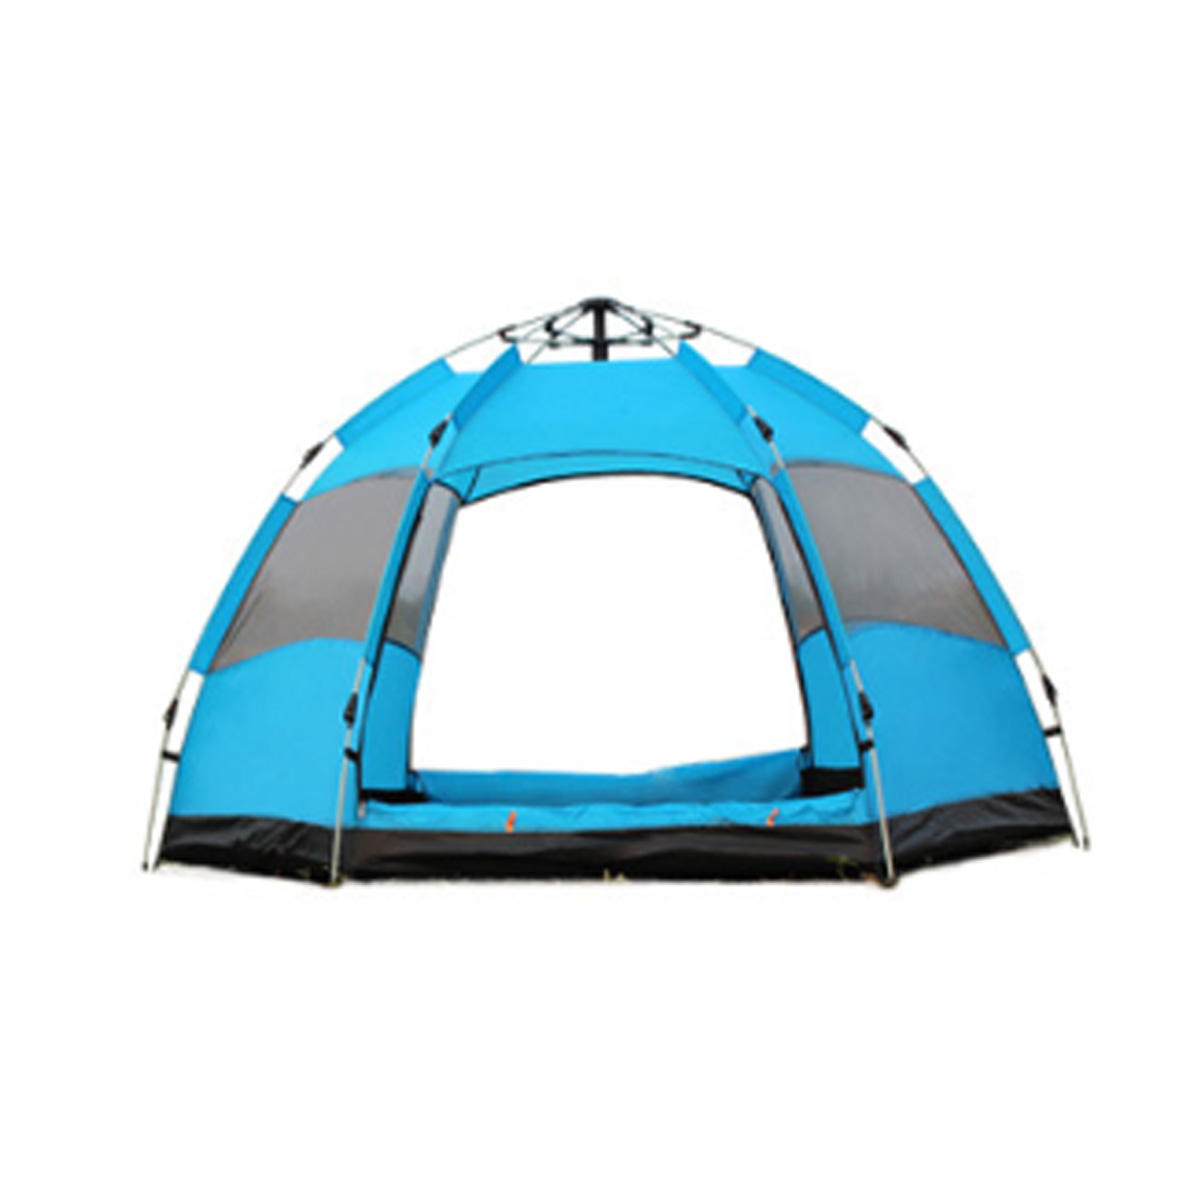 Vollautomatisches Zelt für 3-5 Personen, wasserdicht, schnell öffnend, ideal für Familien-Camping, Wandern, Angeln, Sonnenschutz - Orange / Grün / Blau.